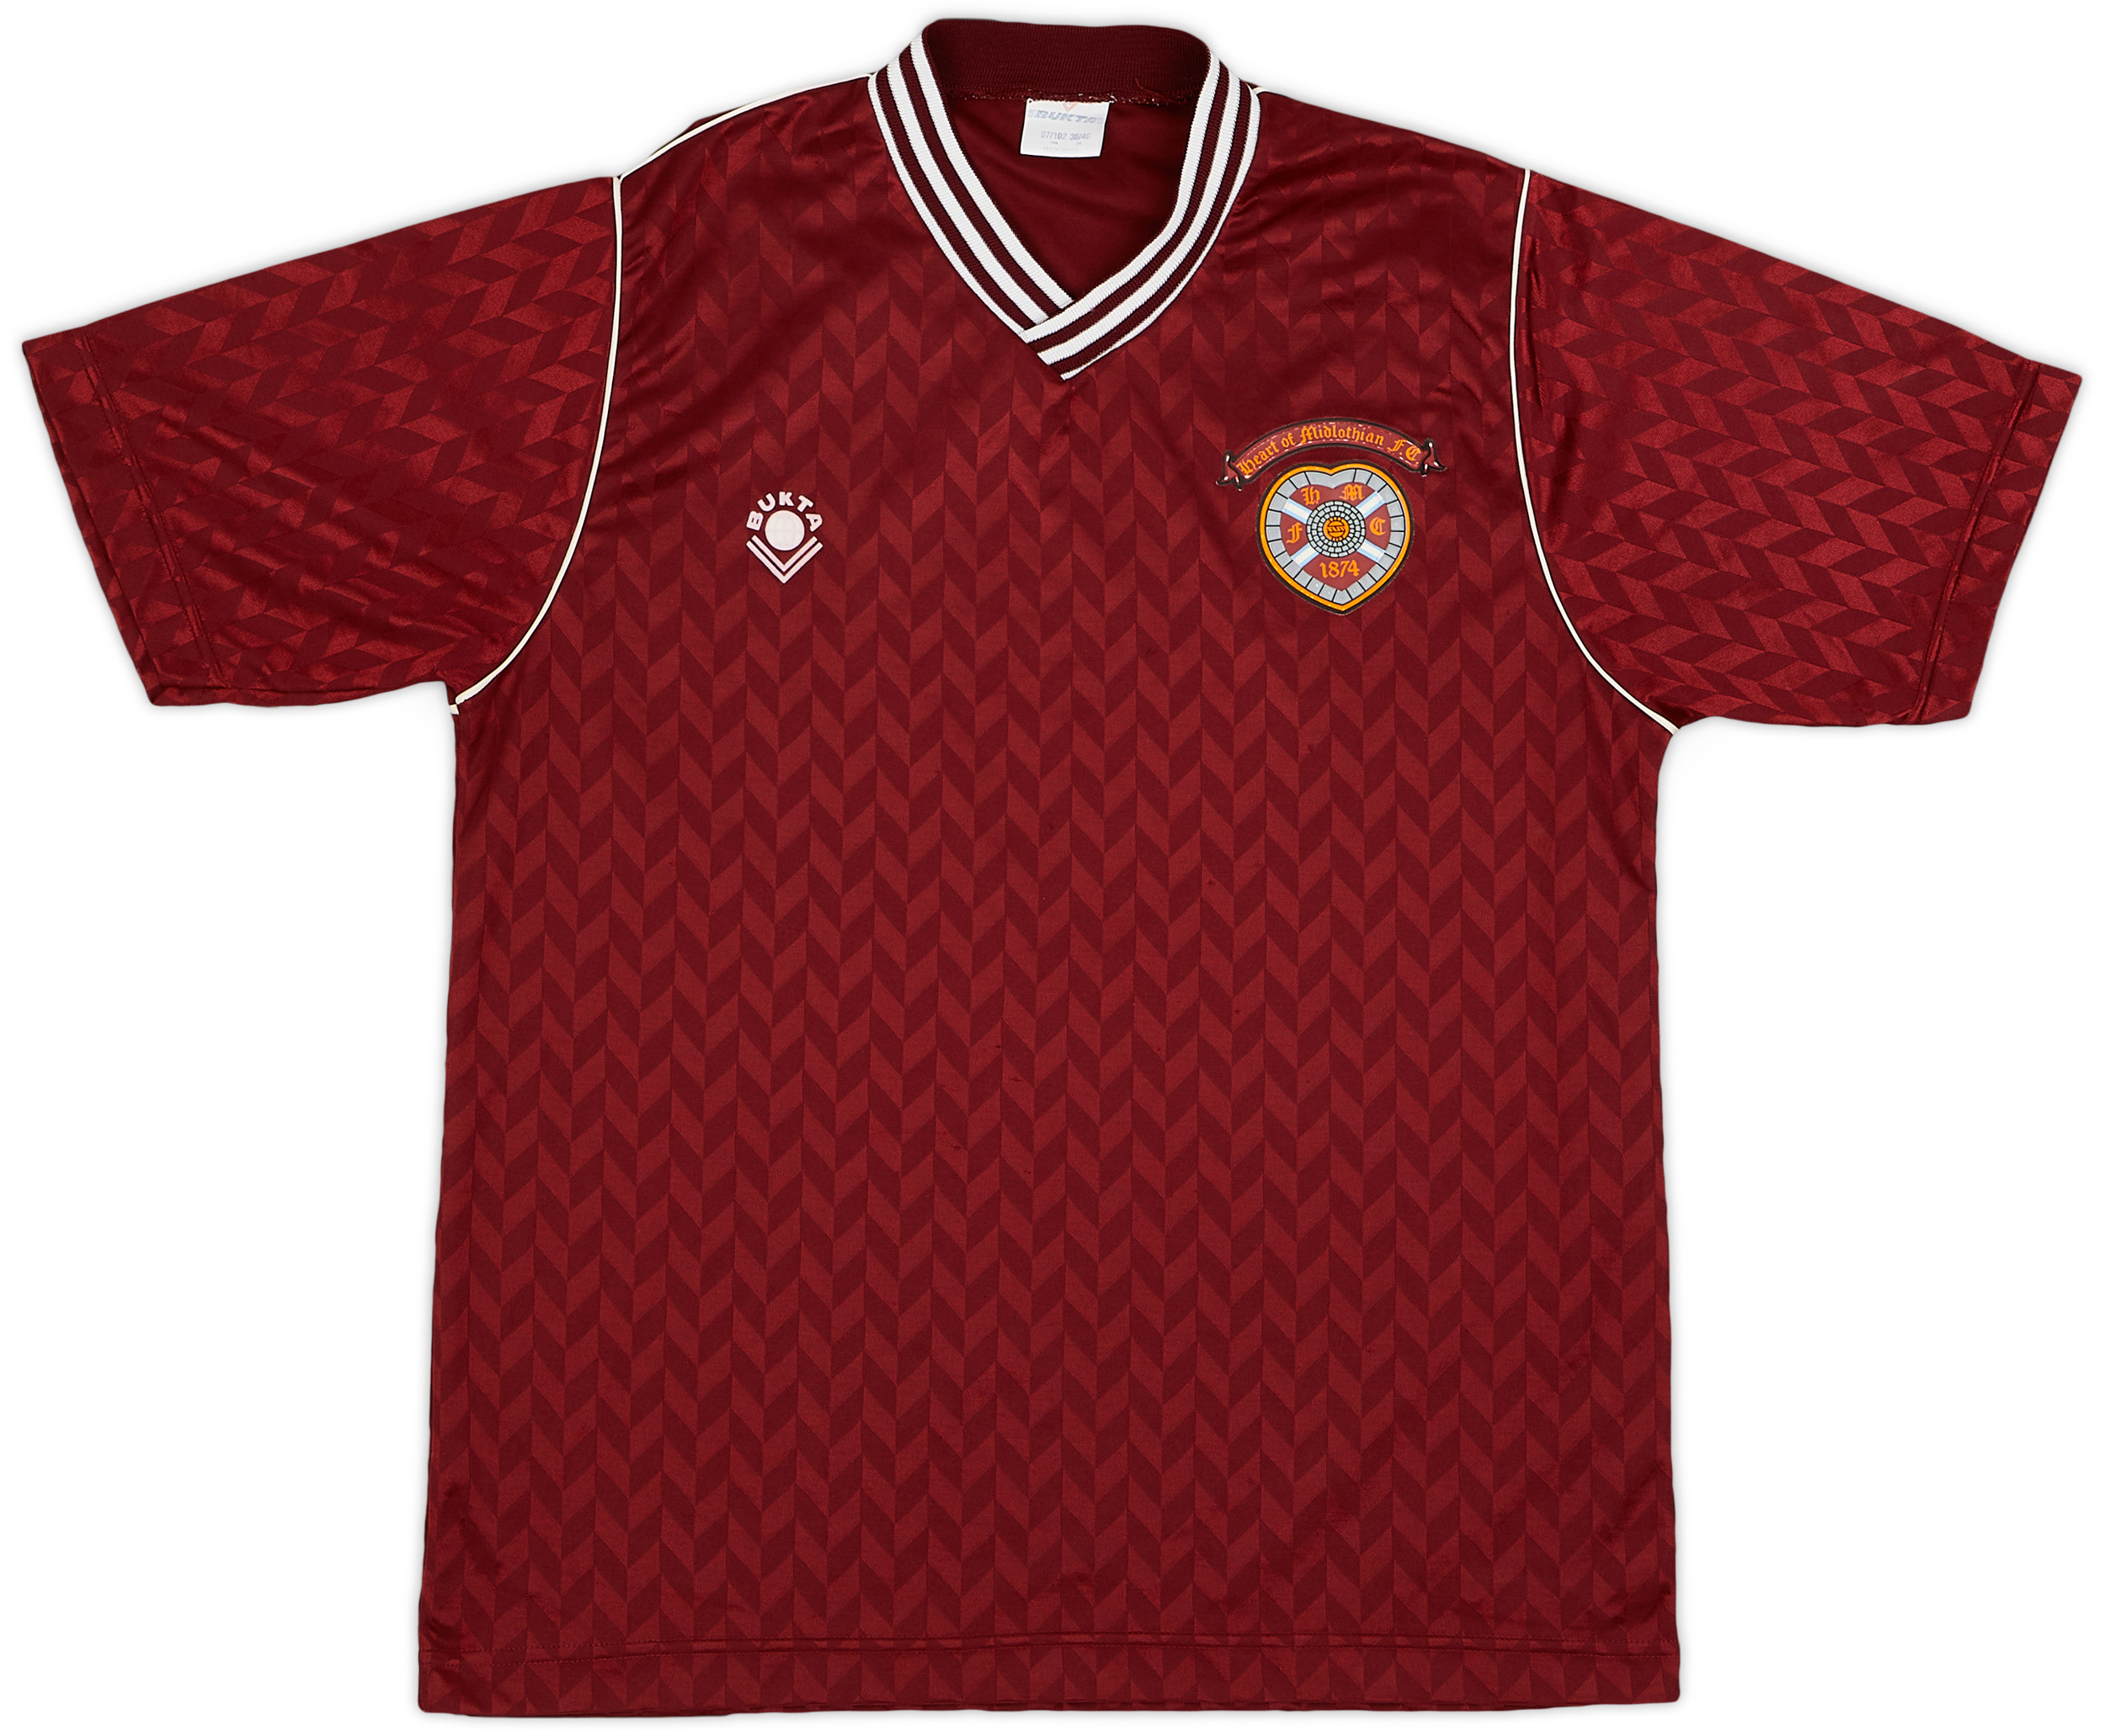 1989-90 Heart Of Midlothian (Hearts) Home Shirt - 9/10 - ()